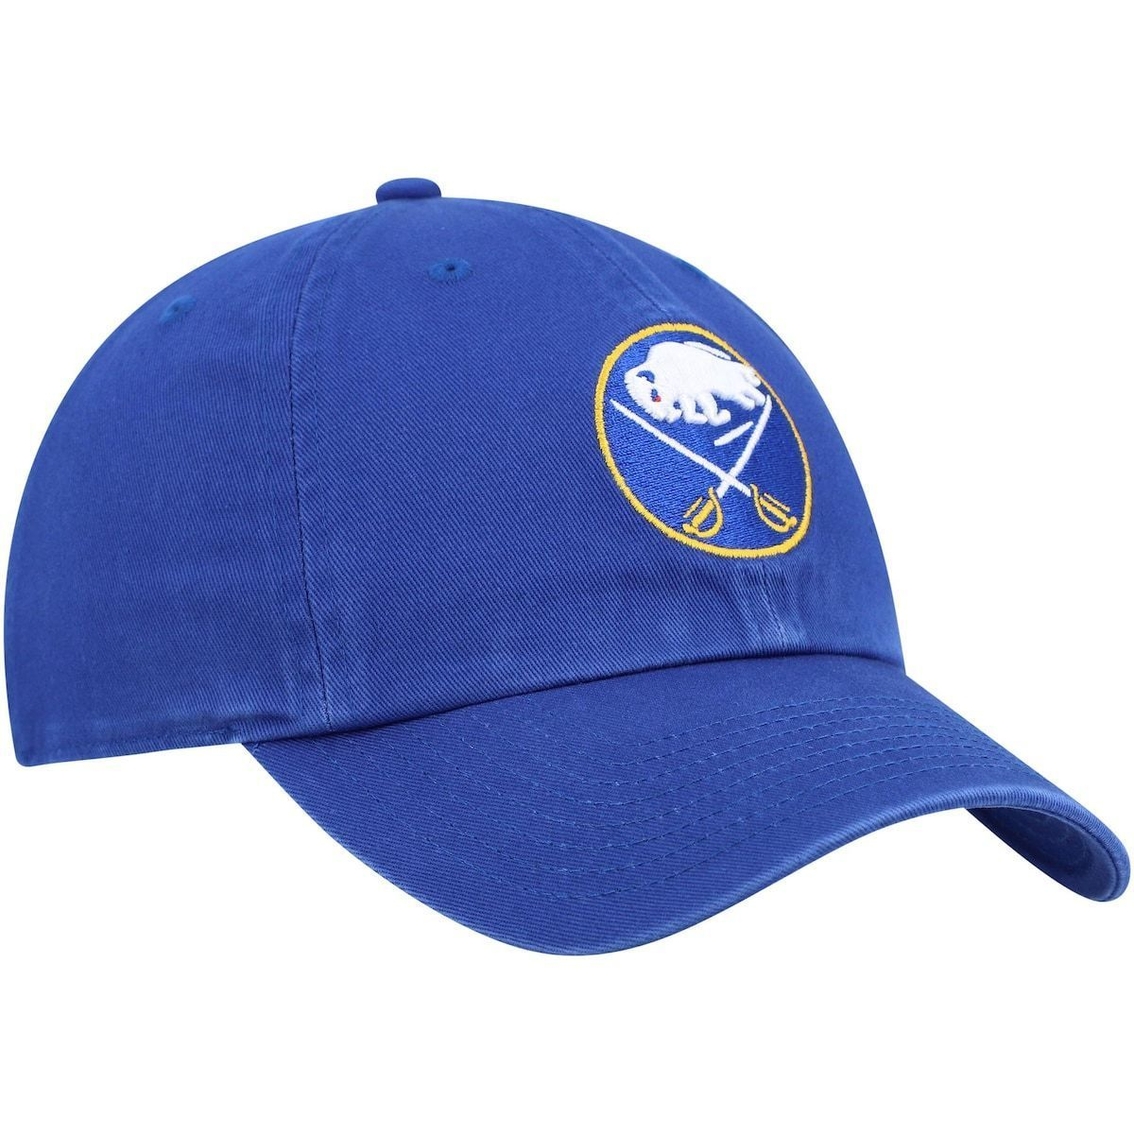 '47 Men's Royal Buffalo Sabres Logo Clean Up Adjustable Hat - Image 4 of 4